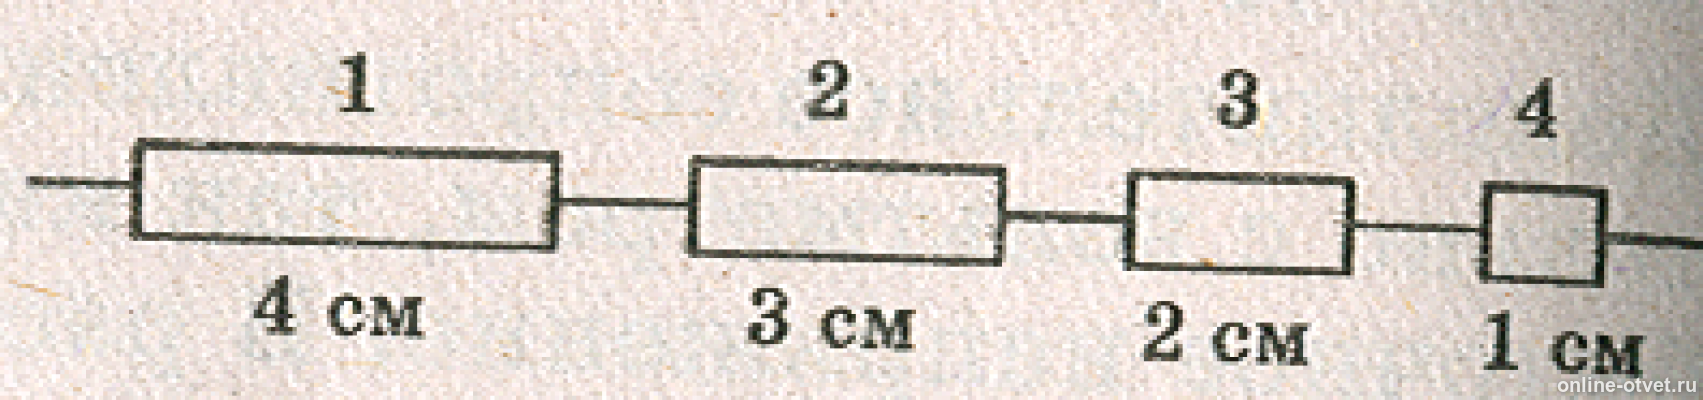 Три проводки одинаковой длины и поперечного сечения. Электрическая цепь из разных сечений проводов. Электрическая цепь состоит из одинаковых провод. Проводники разной длины. Цепочка состоит из четырех